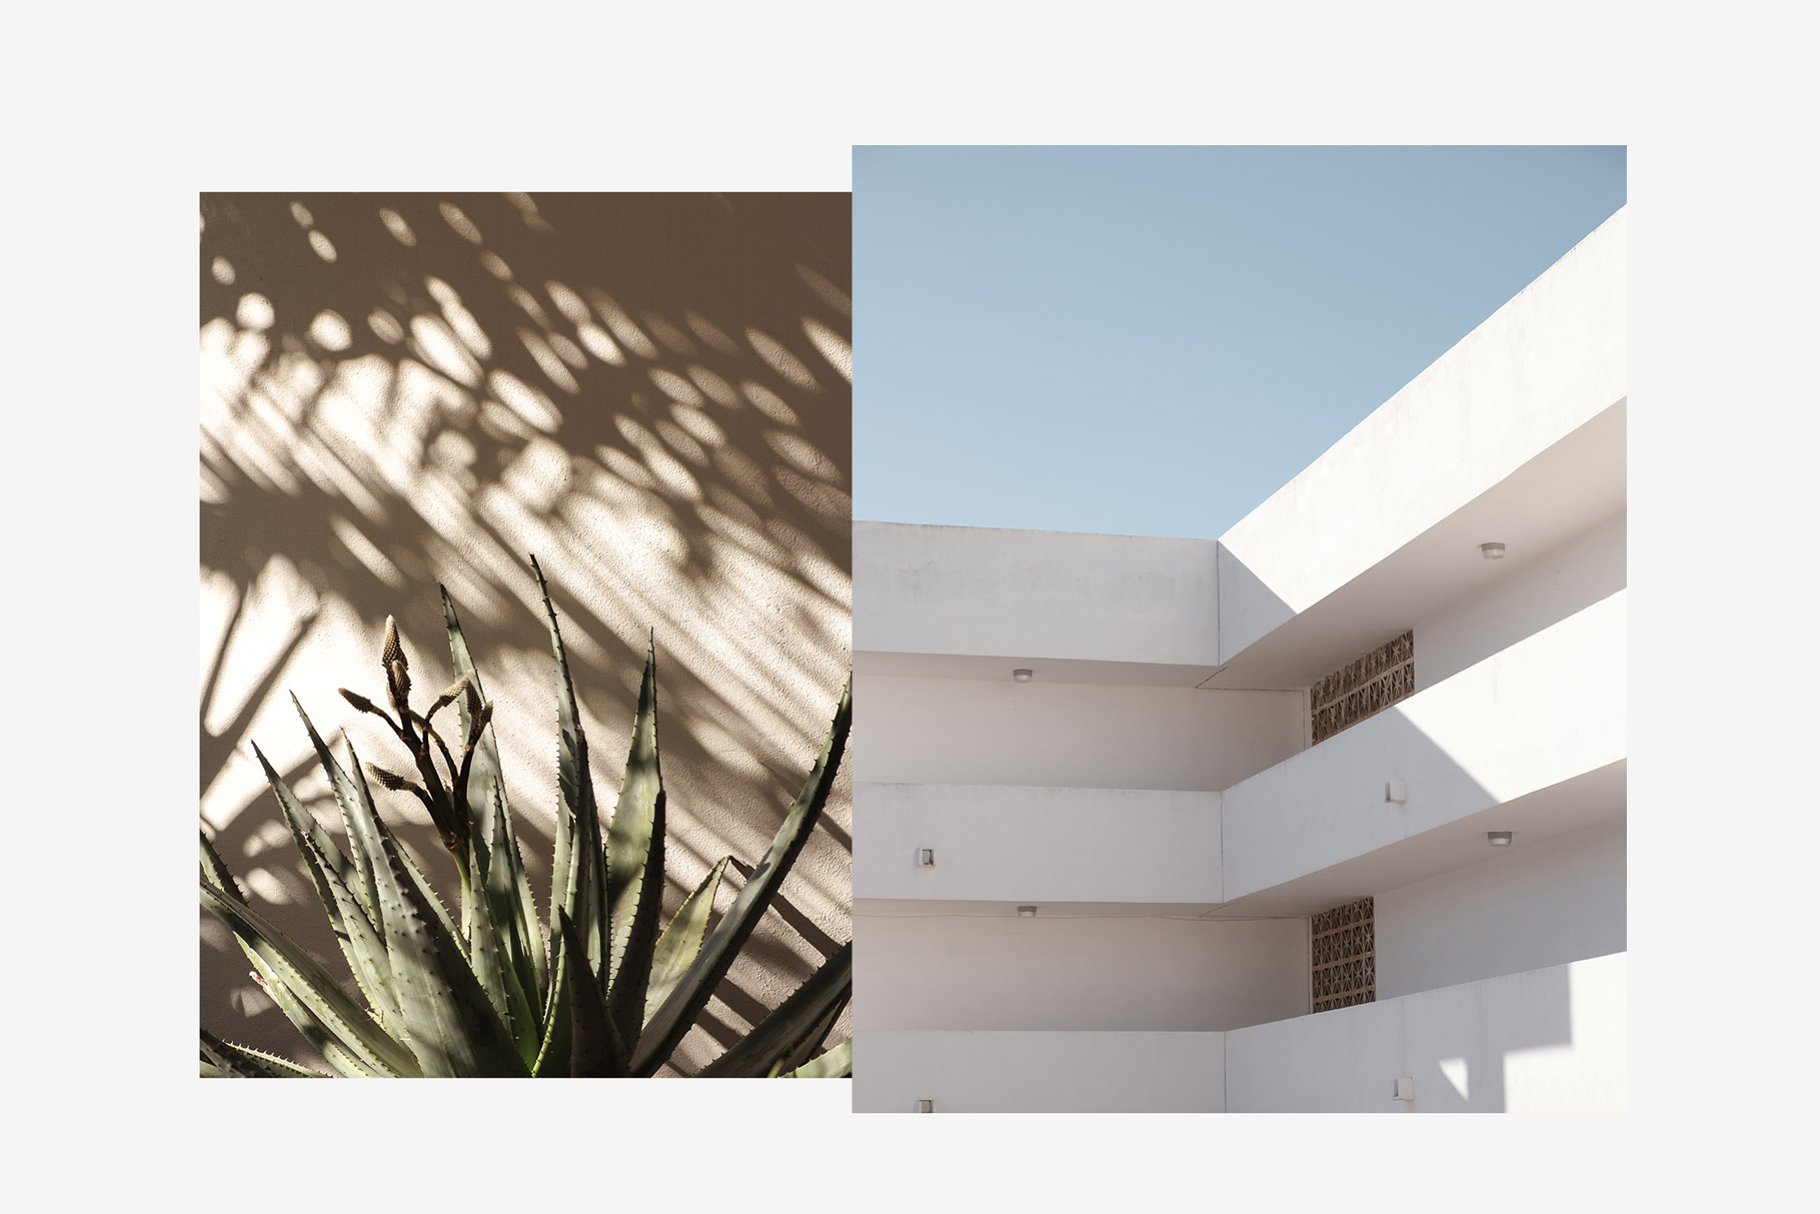 2 minimalist photos - plant and building facade - balconies.